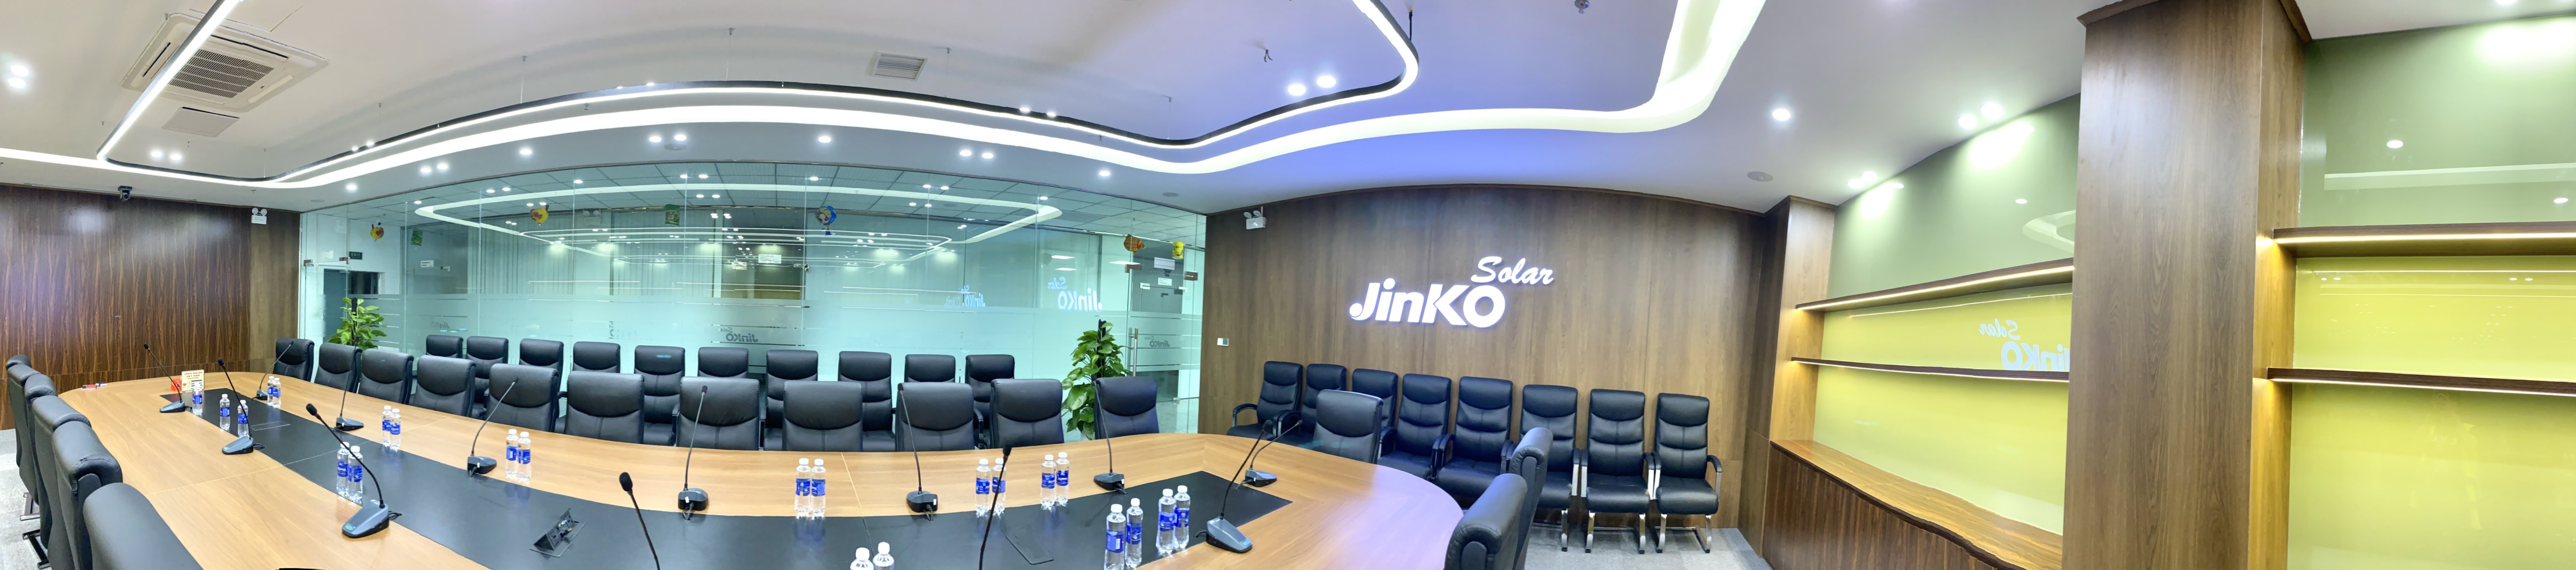 Thiết kế nội thất phòng họp khu công nghiệp JinkoSolar